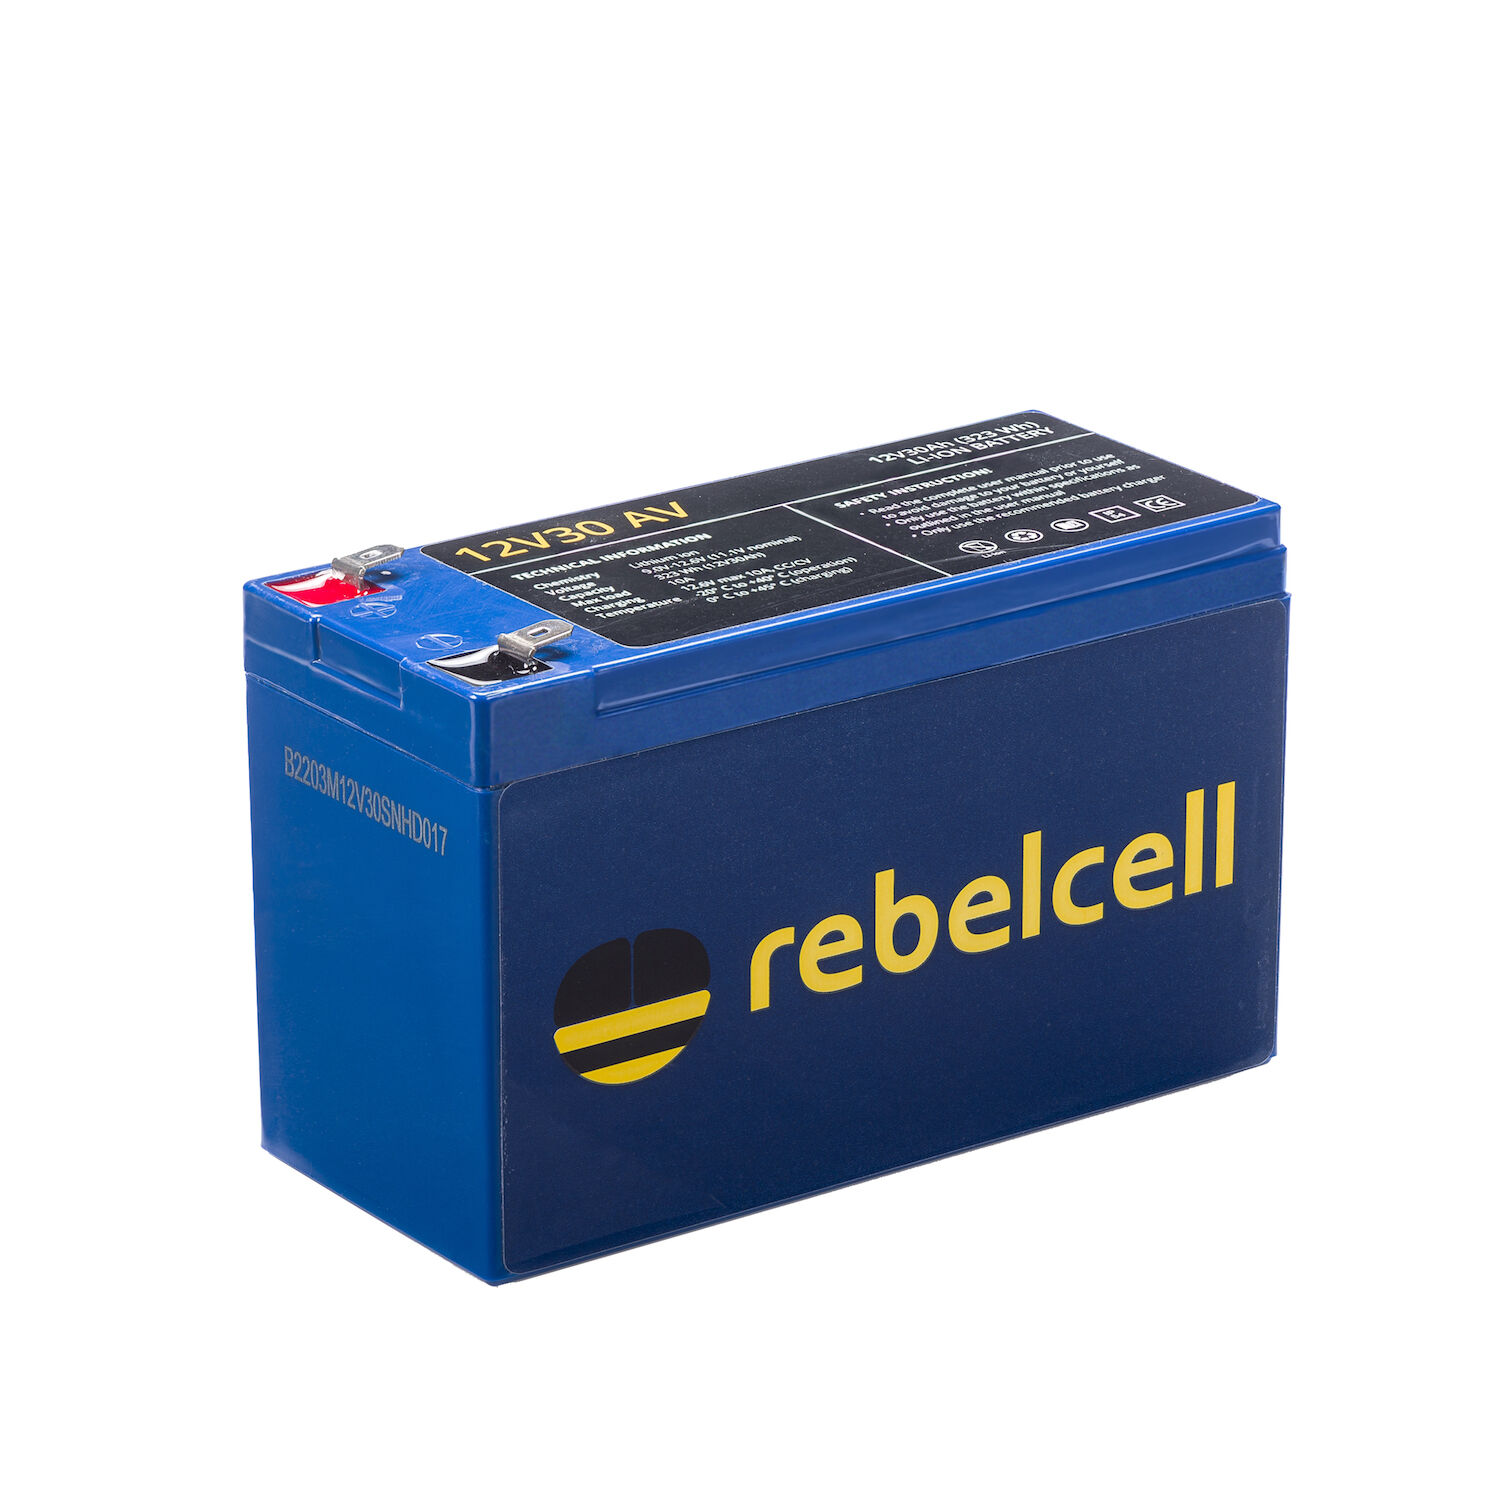 RebelCell 12V30 AV Lithium Batterie (12V 30Ah) 323Wh